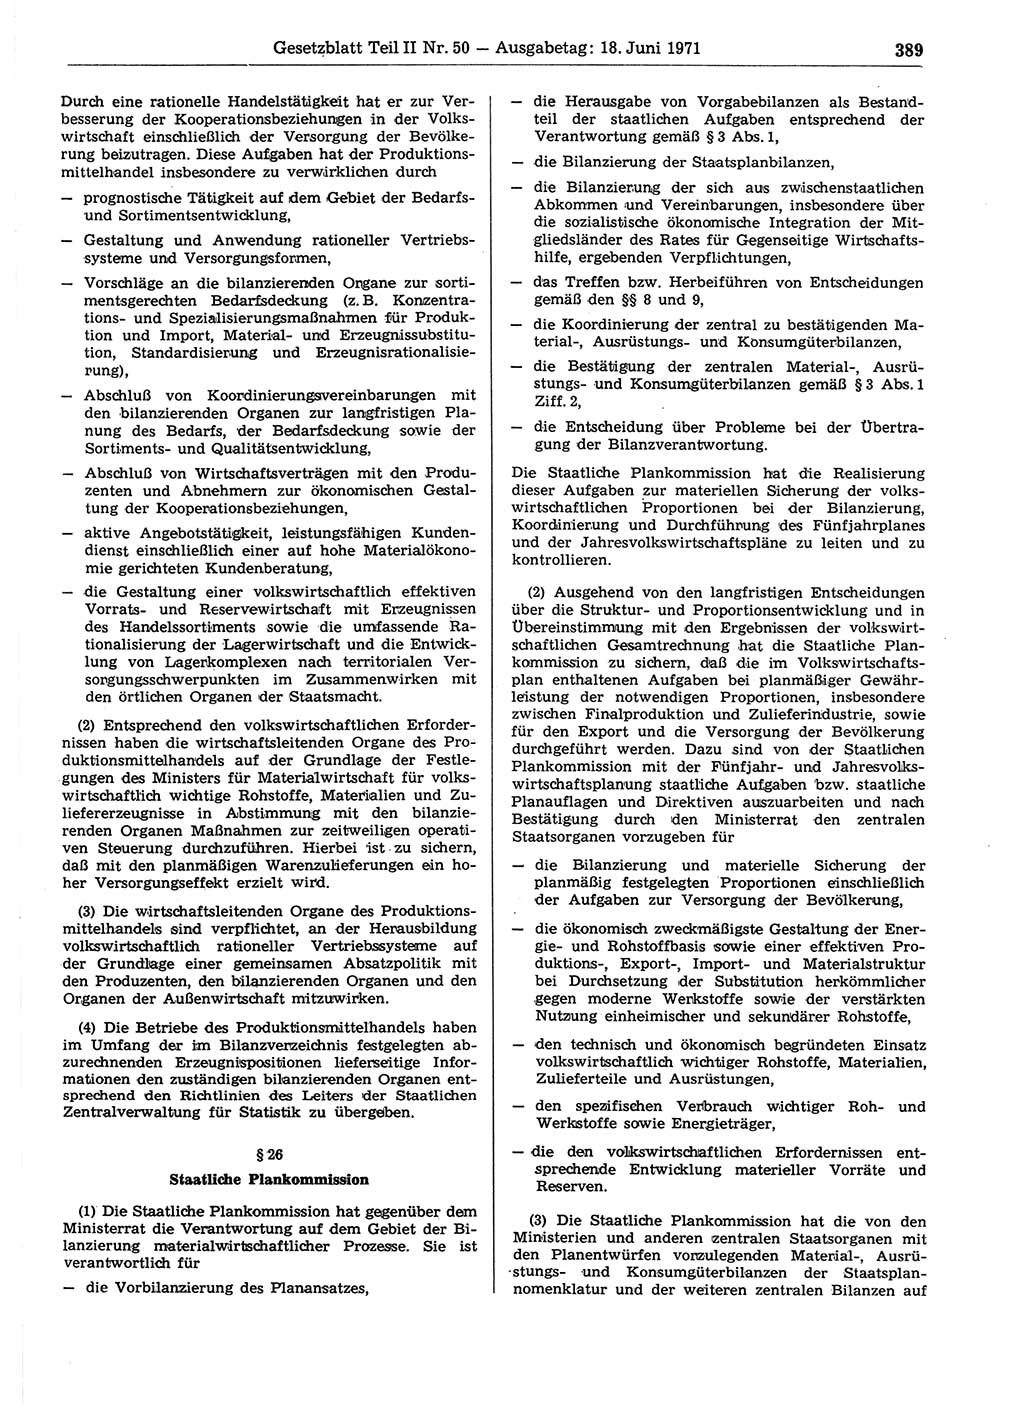 Gesetzblatt (GBl.) der Deutschen Demokratischen Republik (DDR) Teil ⅠⅠ 1971, Seite 389 (GBl. DDR ⅠⅠ 1971, S. 389)